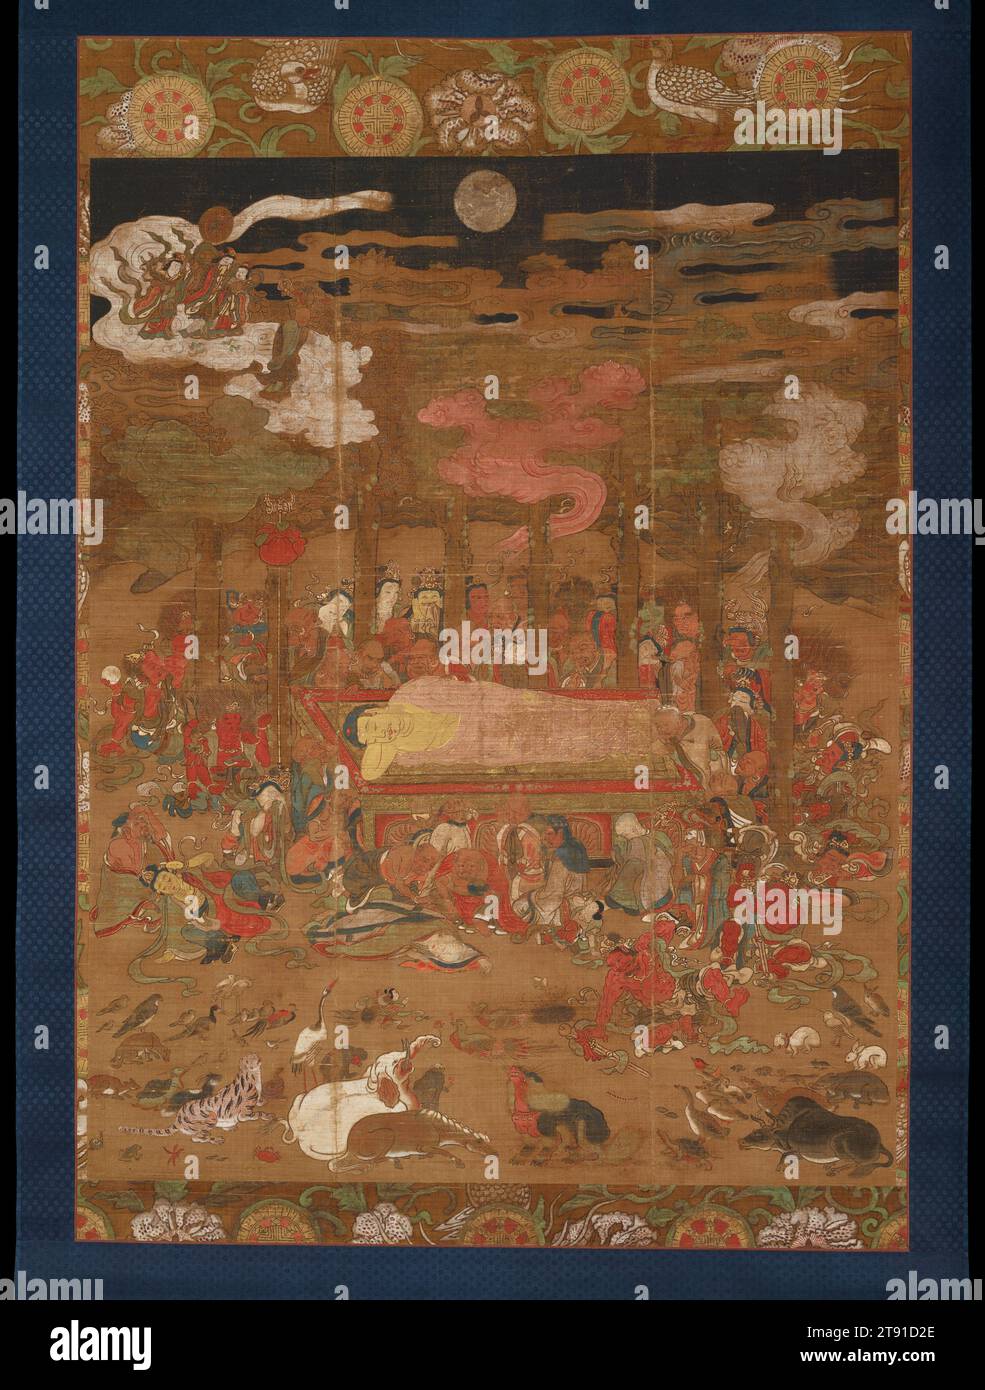 Parinirvana di Sakyamuni, il Buddha storico, XIV secolo, sconosciuto giapponese, 61 x 41 15/16 pollici (154,94 x 106,52 cm) (solo immagine)85 x 48 1/2" (215,9 x 123,19 cm) (montaggio, senza rullo)87 x 51 1/2" (220,98 x 130,81 cm) (con rullo), inchiostro, colore e oro su seta, Giappone, XIV secolo, la tradizione sostiene che in una notte illuminata dalla luna circa 2.500 anni fa, lo storico Buddha, Sakyamuni, morì, sdraiato su un divano in un boschetto di alberi di sala sacri ai piedi dell'Himalaya. Come mostra questo dipinto sacro, una miriade di lutti: Umani, esseri divini, ogni varietà di vita animale Foto Stock